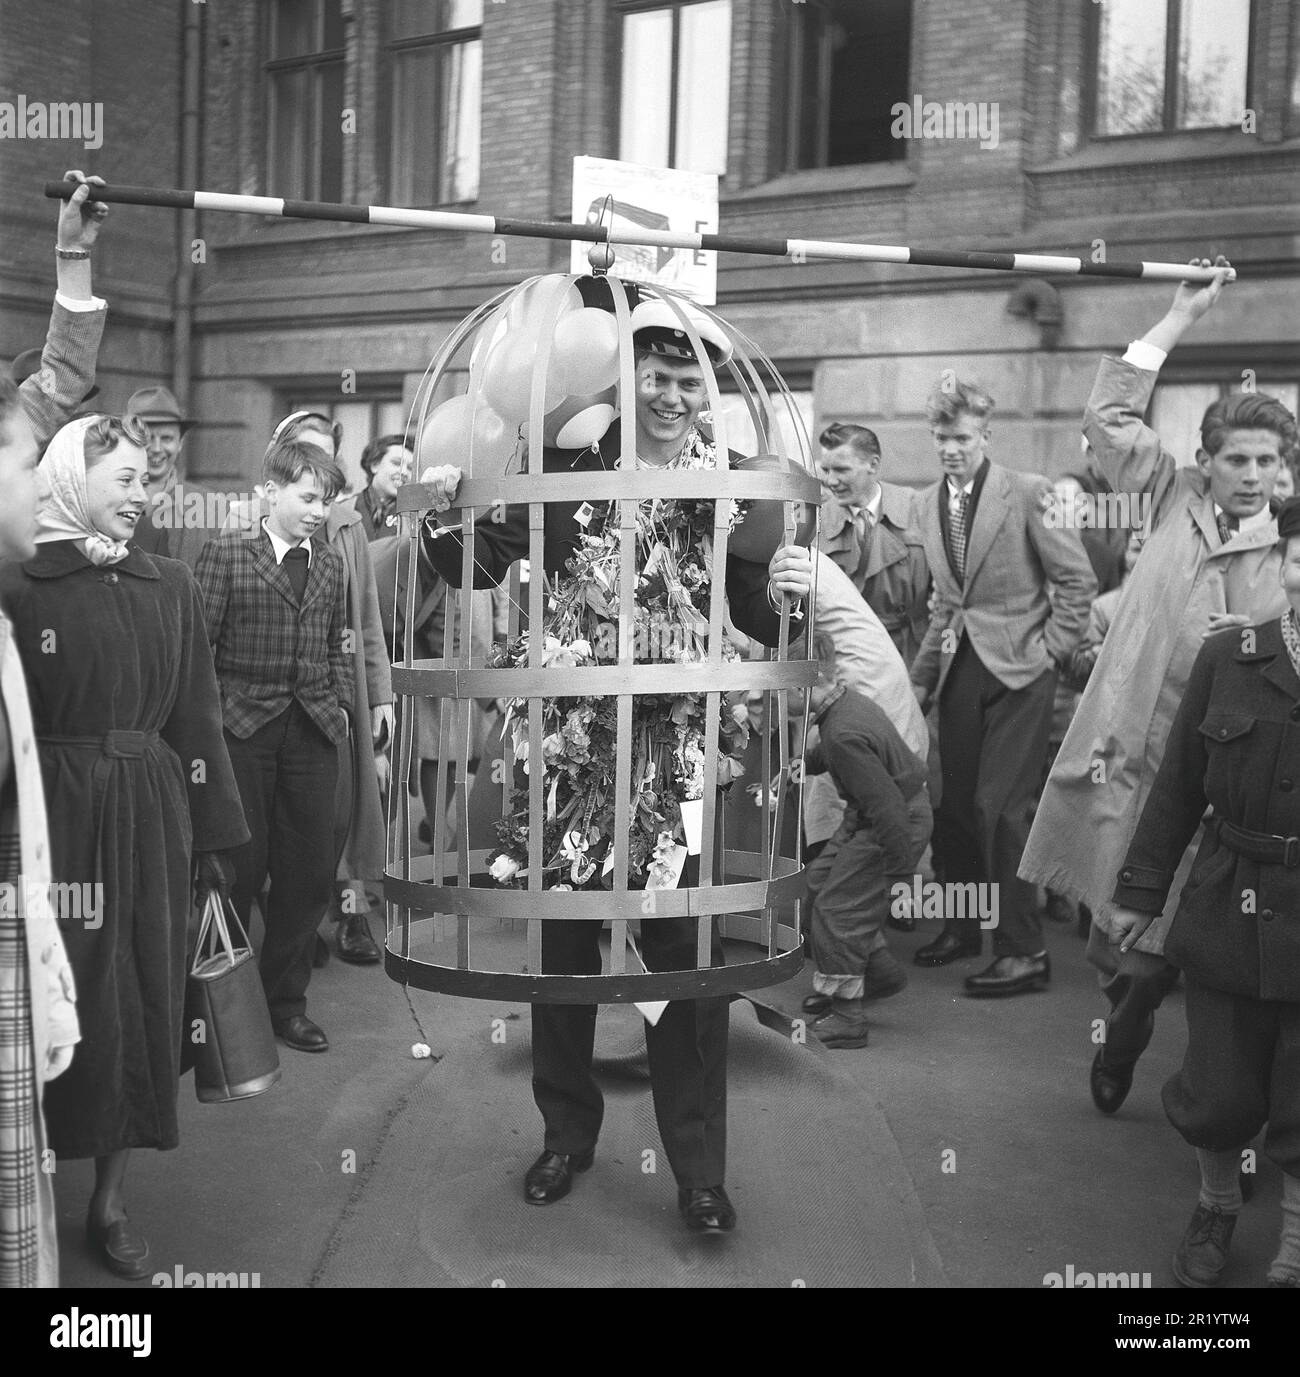 In den 1950er Jahren. Der Abschlusstag, an dem die Prüfungen beendet und die Schule verlassen wird, ist in der Regel ein festlicher Tag mit Familie und Freunden, an dem die Leistungen der Schüler gefeiert werden, indem sie ihn mit Kostümen streicheln und ihm Geschenke und Blumen schenken. Dieser junge Mann wird in einen Käfig gesteckt und auf der Straße vorgeführt. Schweden 1953 Kristoffersson Ref BL79-1 Stockfoto